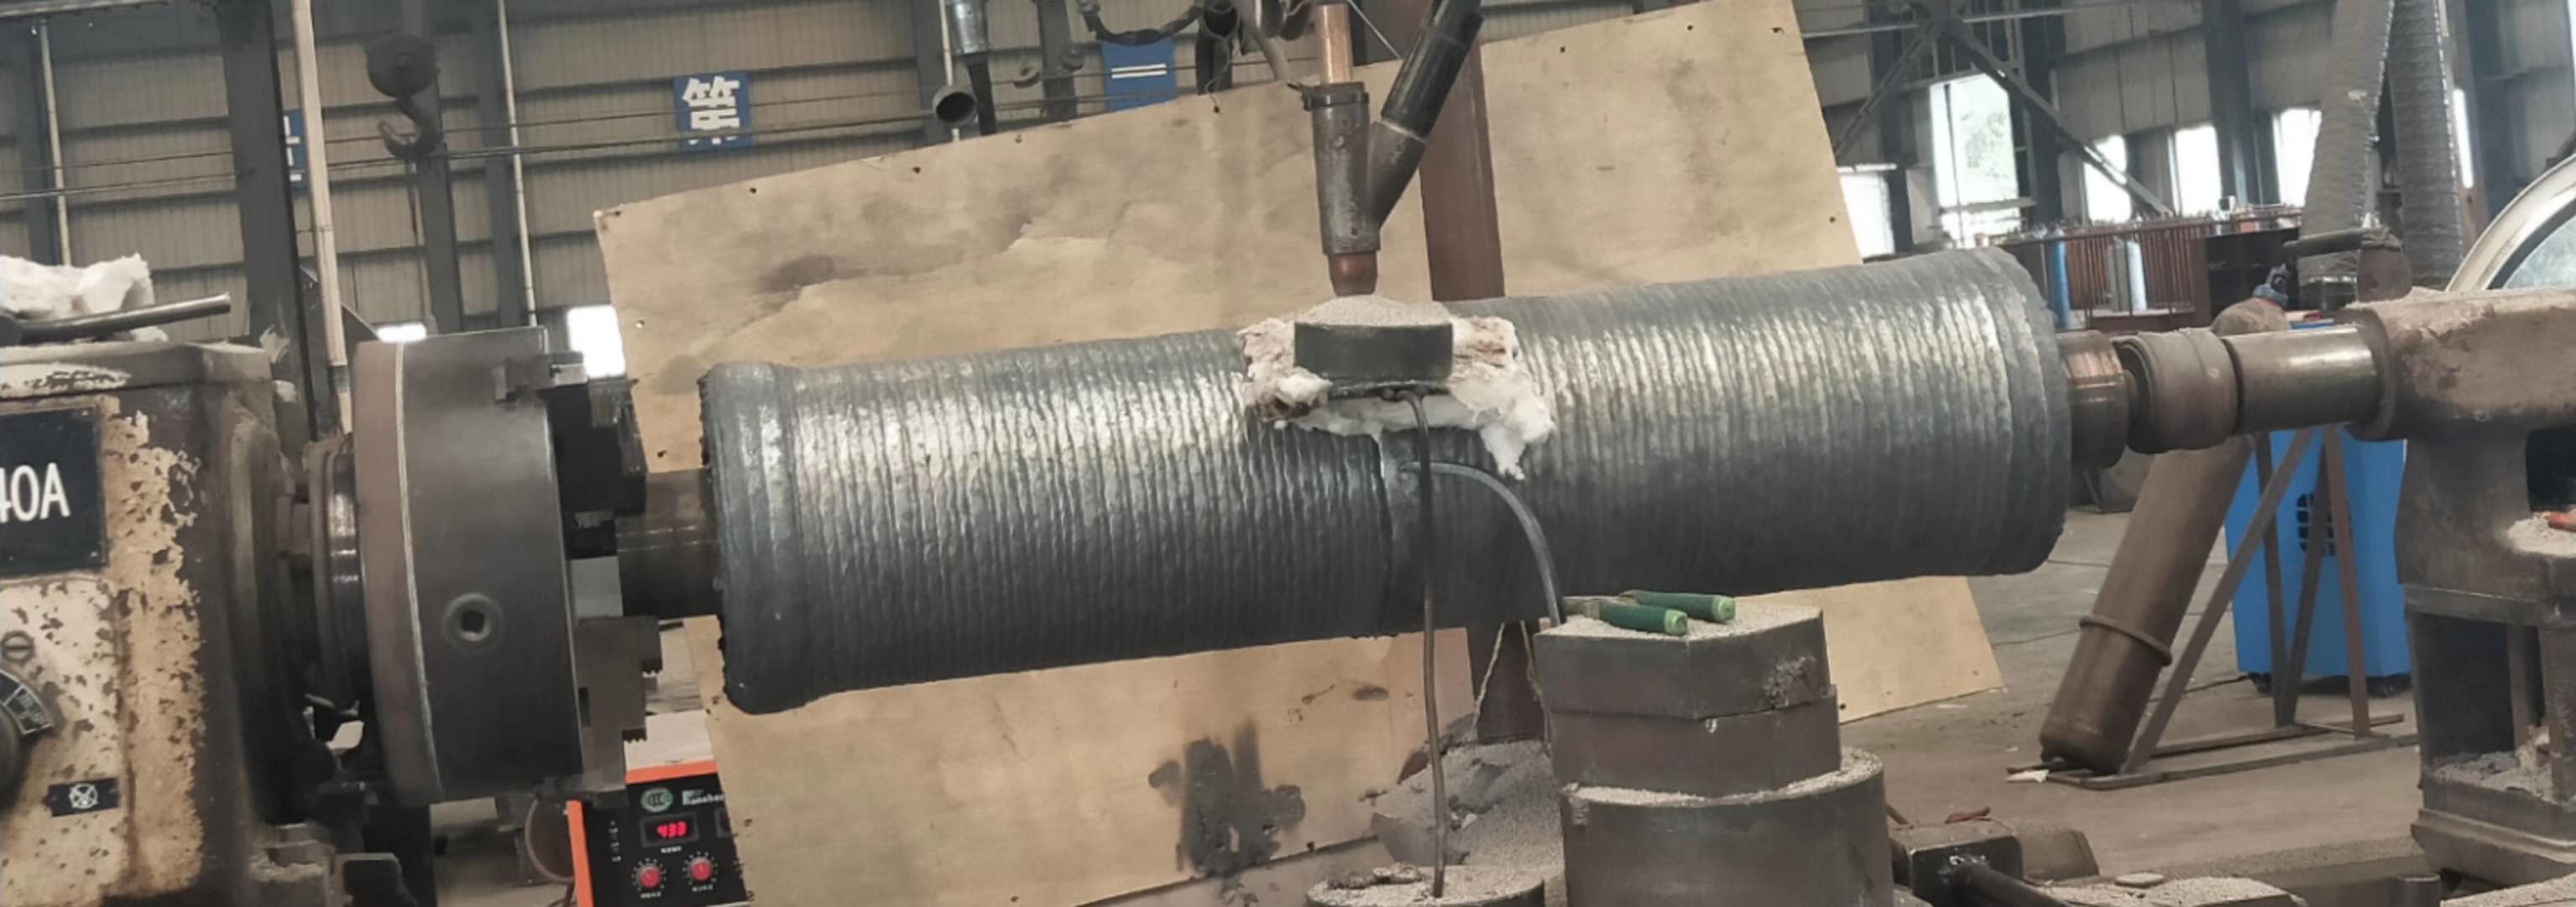 天津雷公供应堆焊连铸辊耐磨焊丝